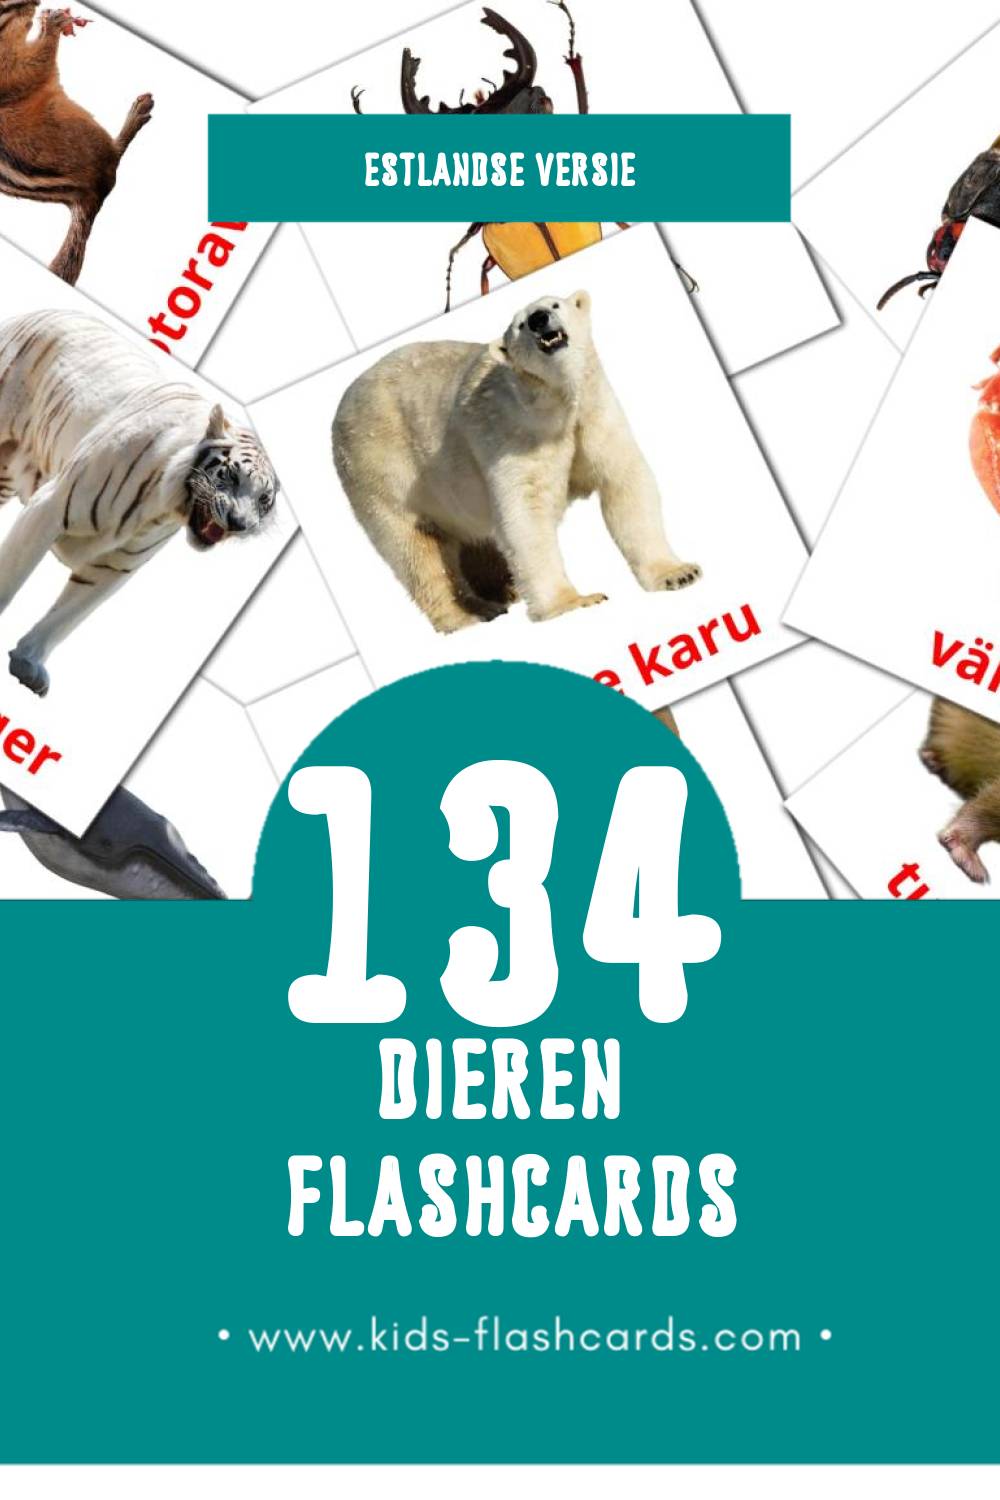 Visuele LOOMAD Flashcards voor Kleuters (134 kaarten in het Estlands)